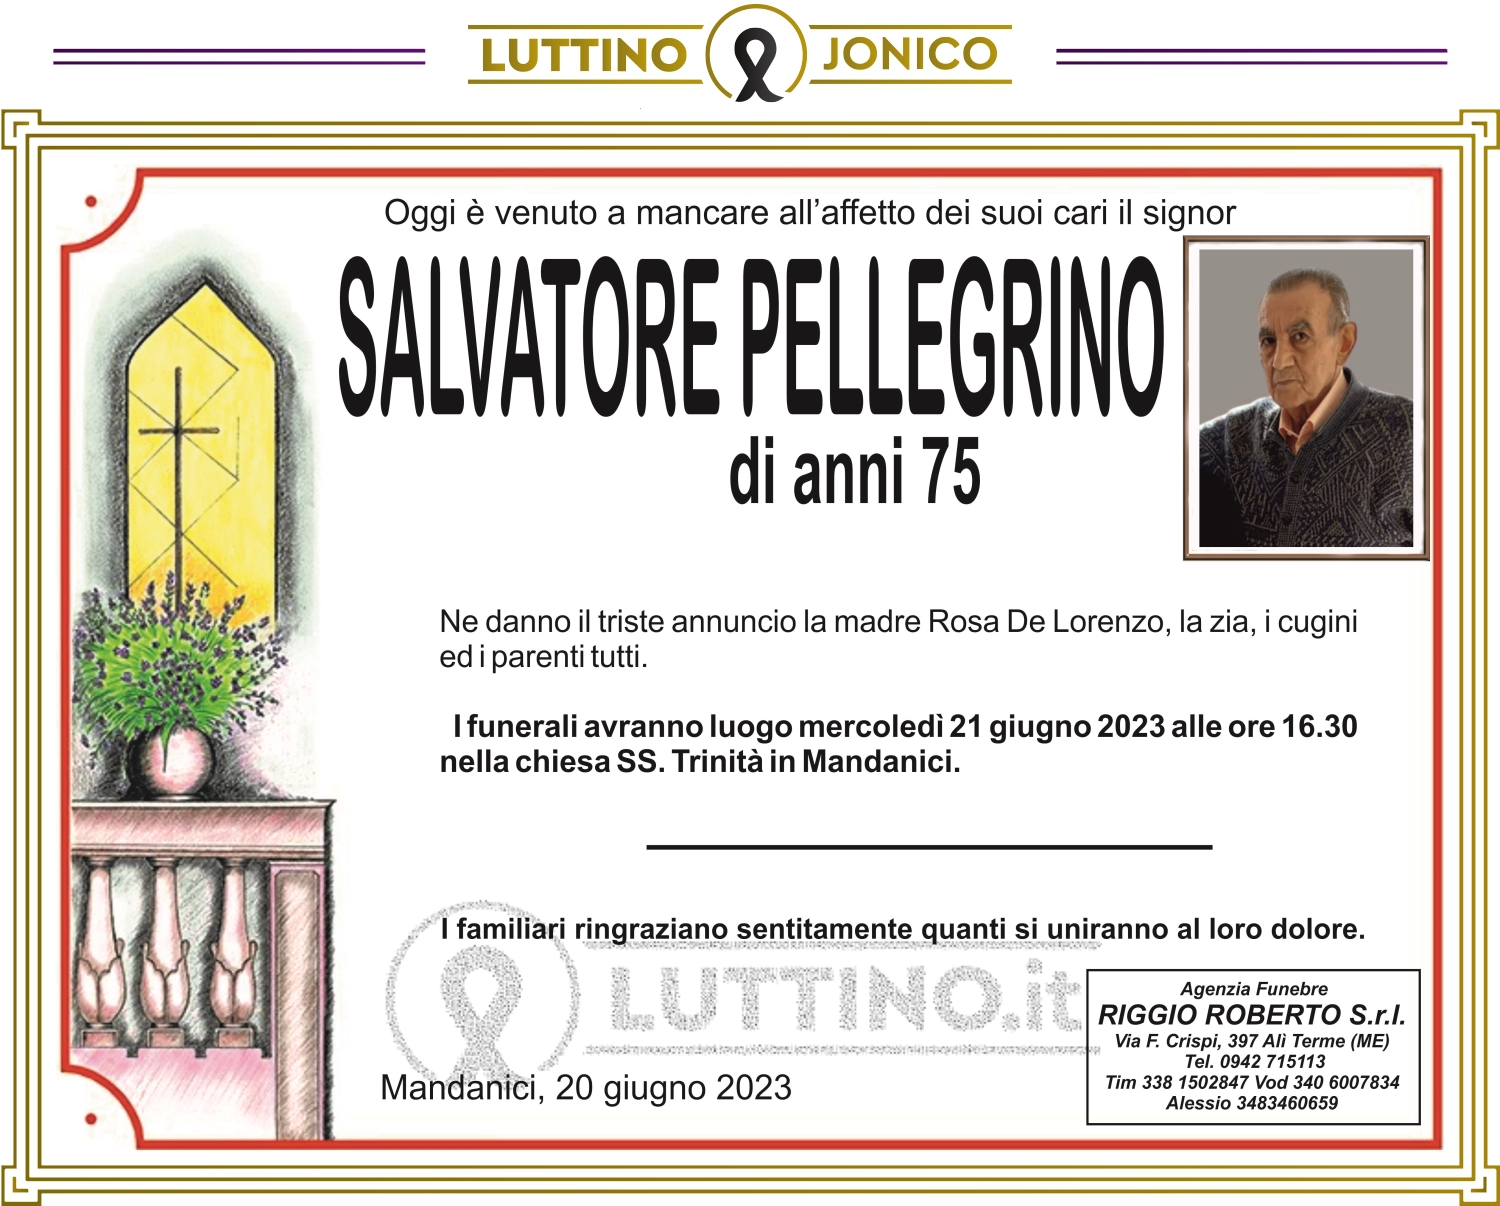 Salvatore Pellegrino